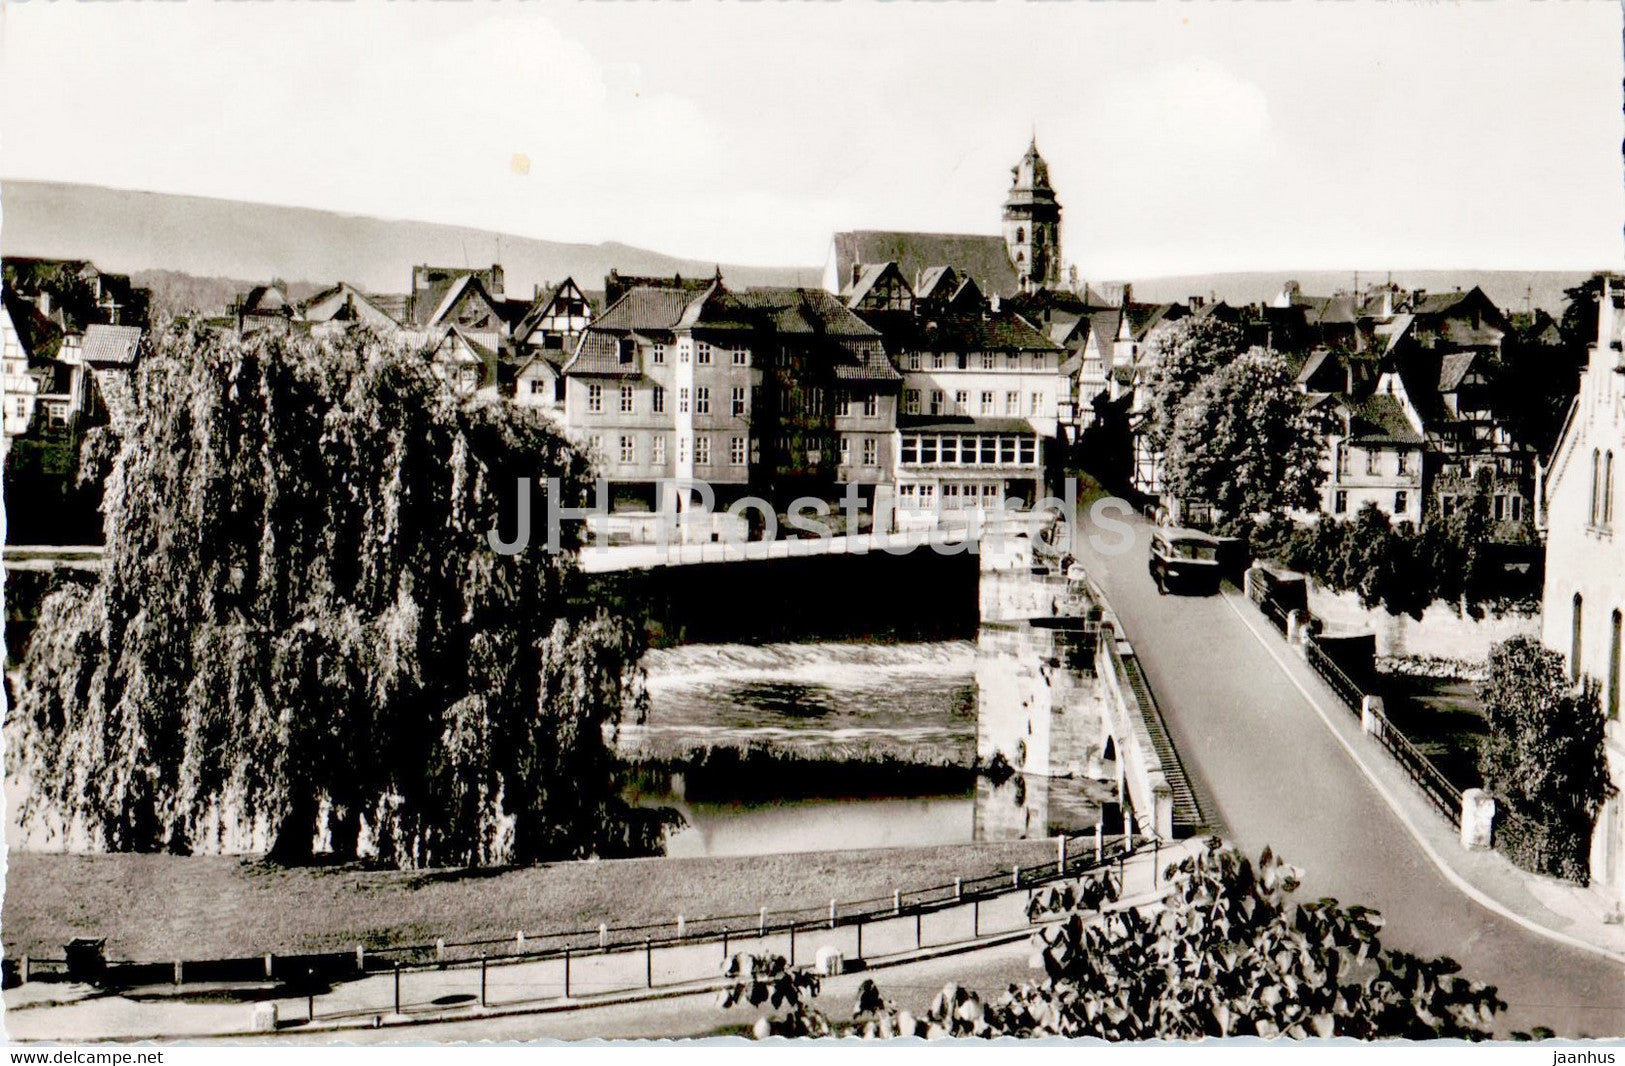 Hann Munden - Werrabrucke mit Eingang zur Stadt - bridge - old postcard - Germany - unused - JH Postcards